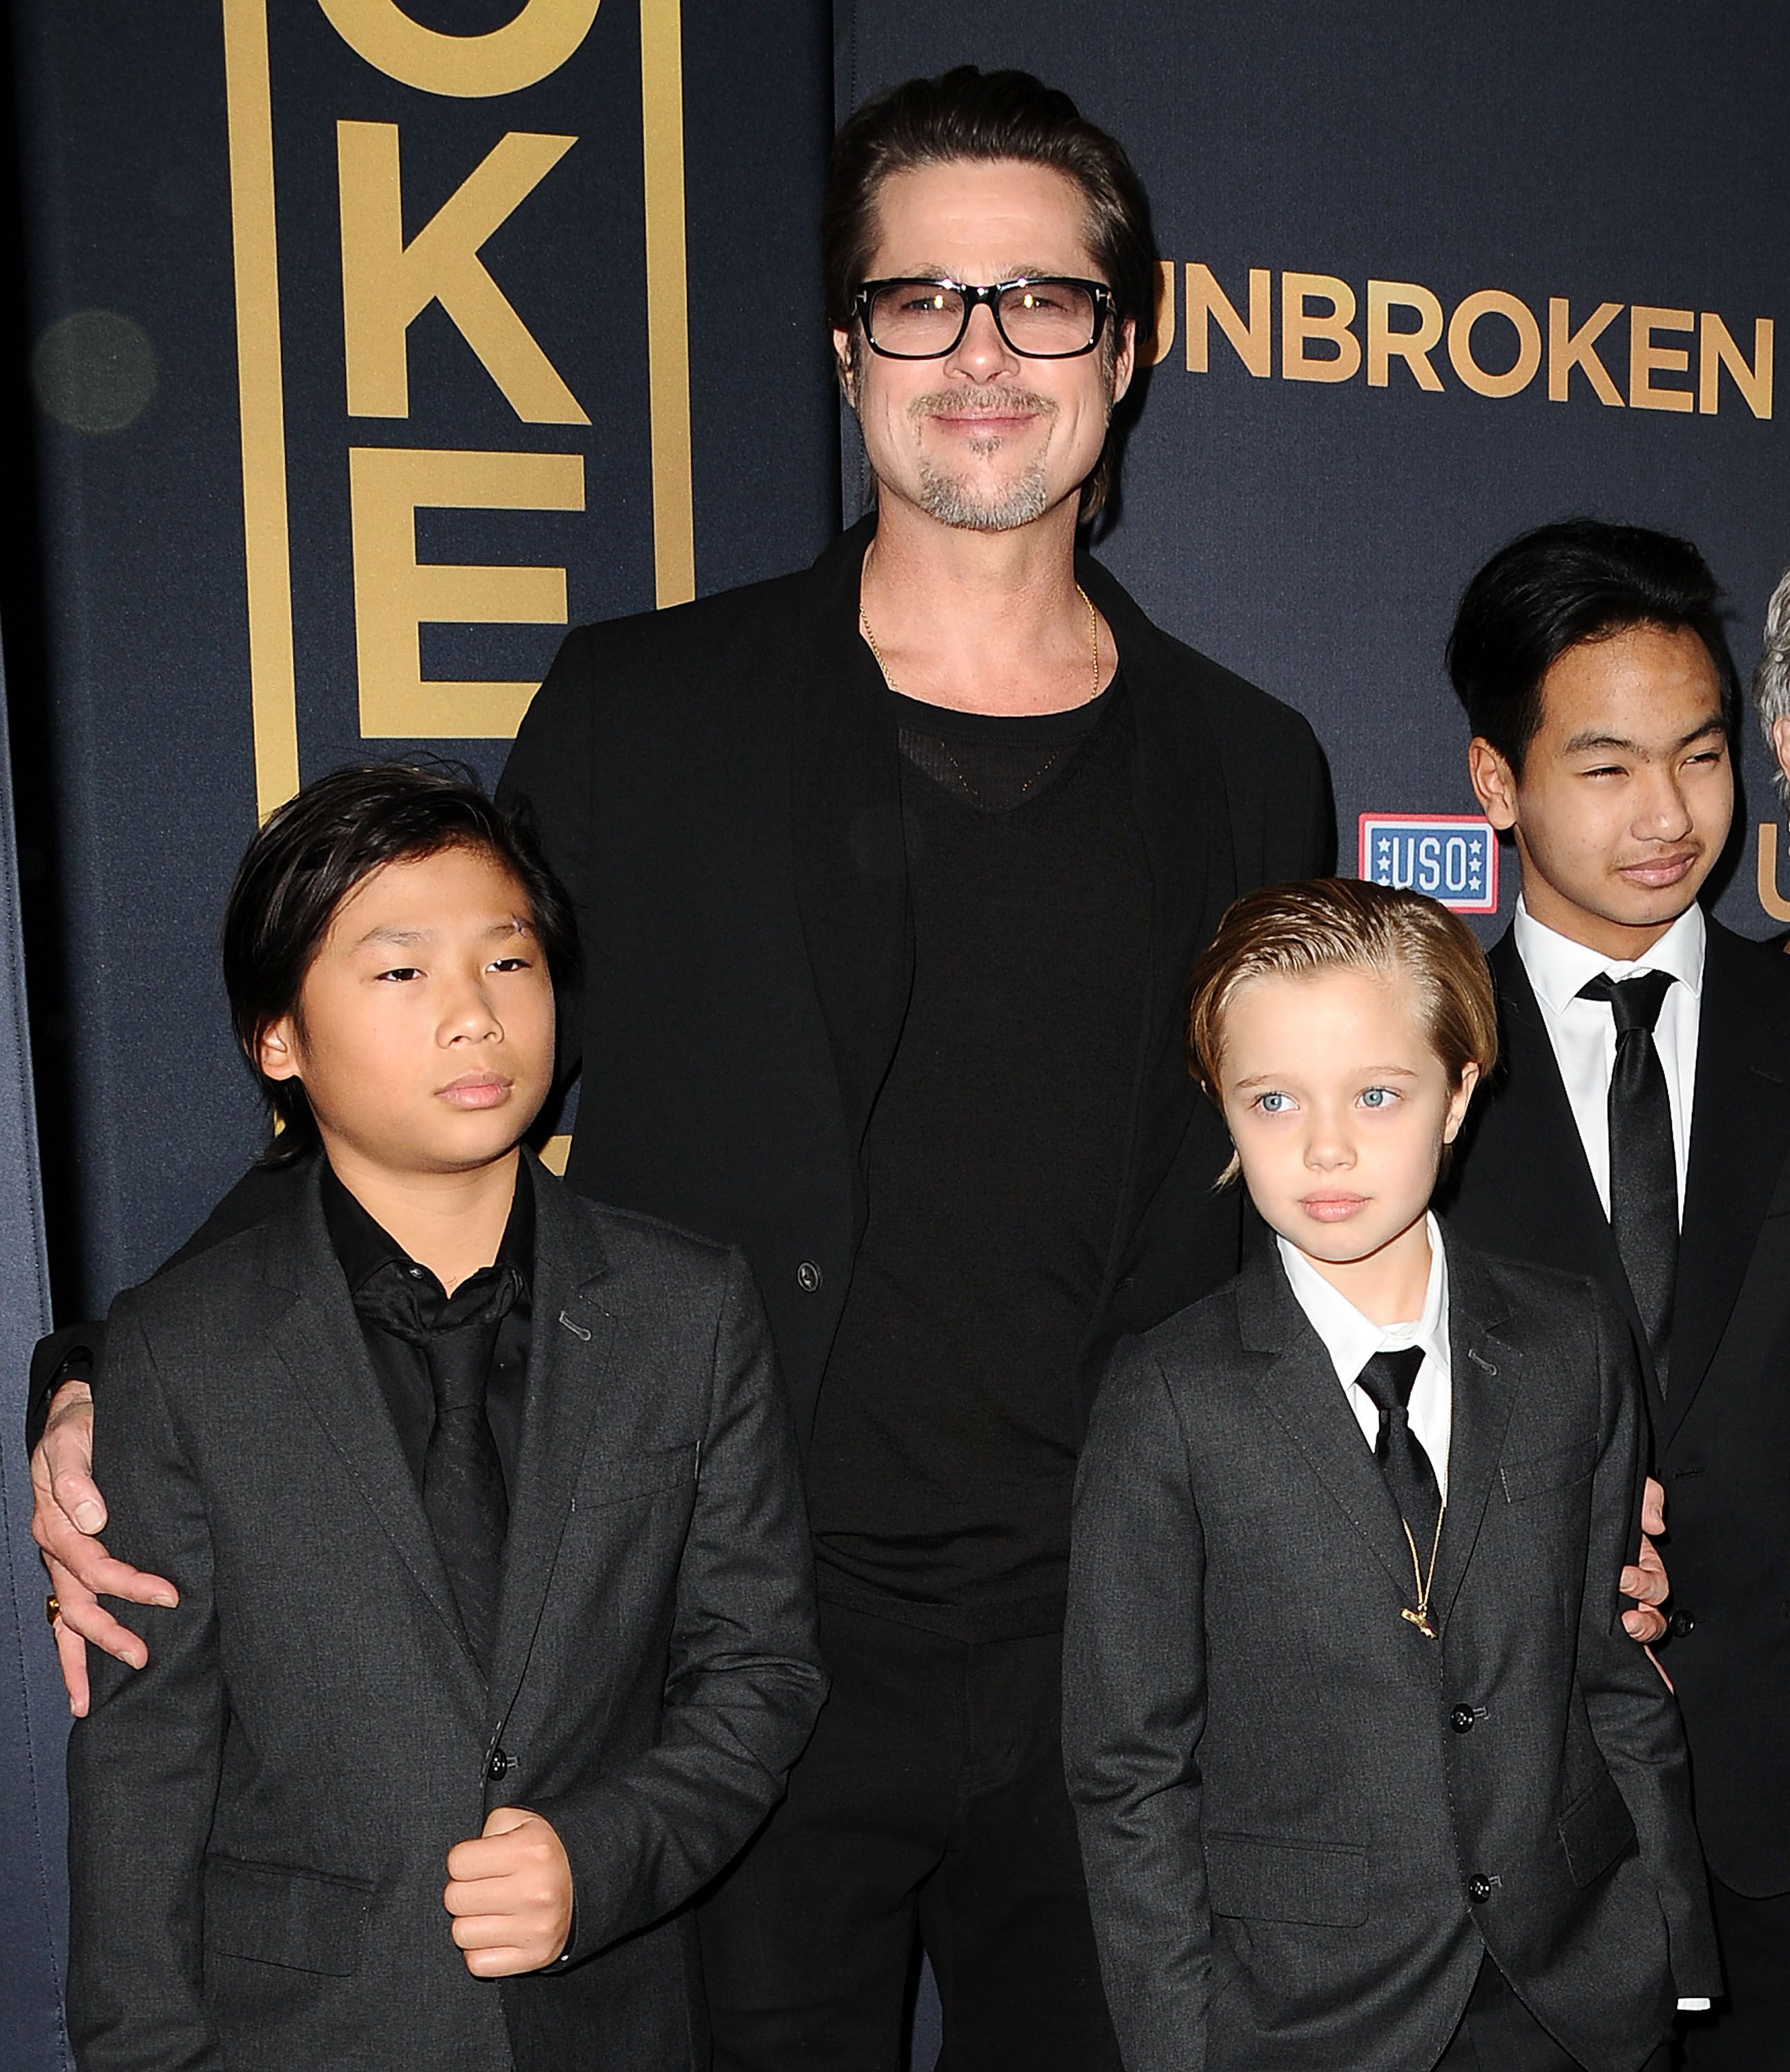 Brad Pitt, Pax Thien Jolie-Pitt, Shiloh Nouvel Jolie-Pitt, et Maddox Jolie-Pitt lors de la première de "Unbroken" au TCL Chinese Theatre IMAX le 15 décembre 2014, à Hollywood, en Californie. | Source : Getty Images